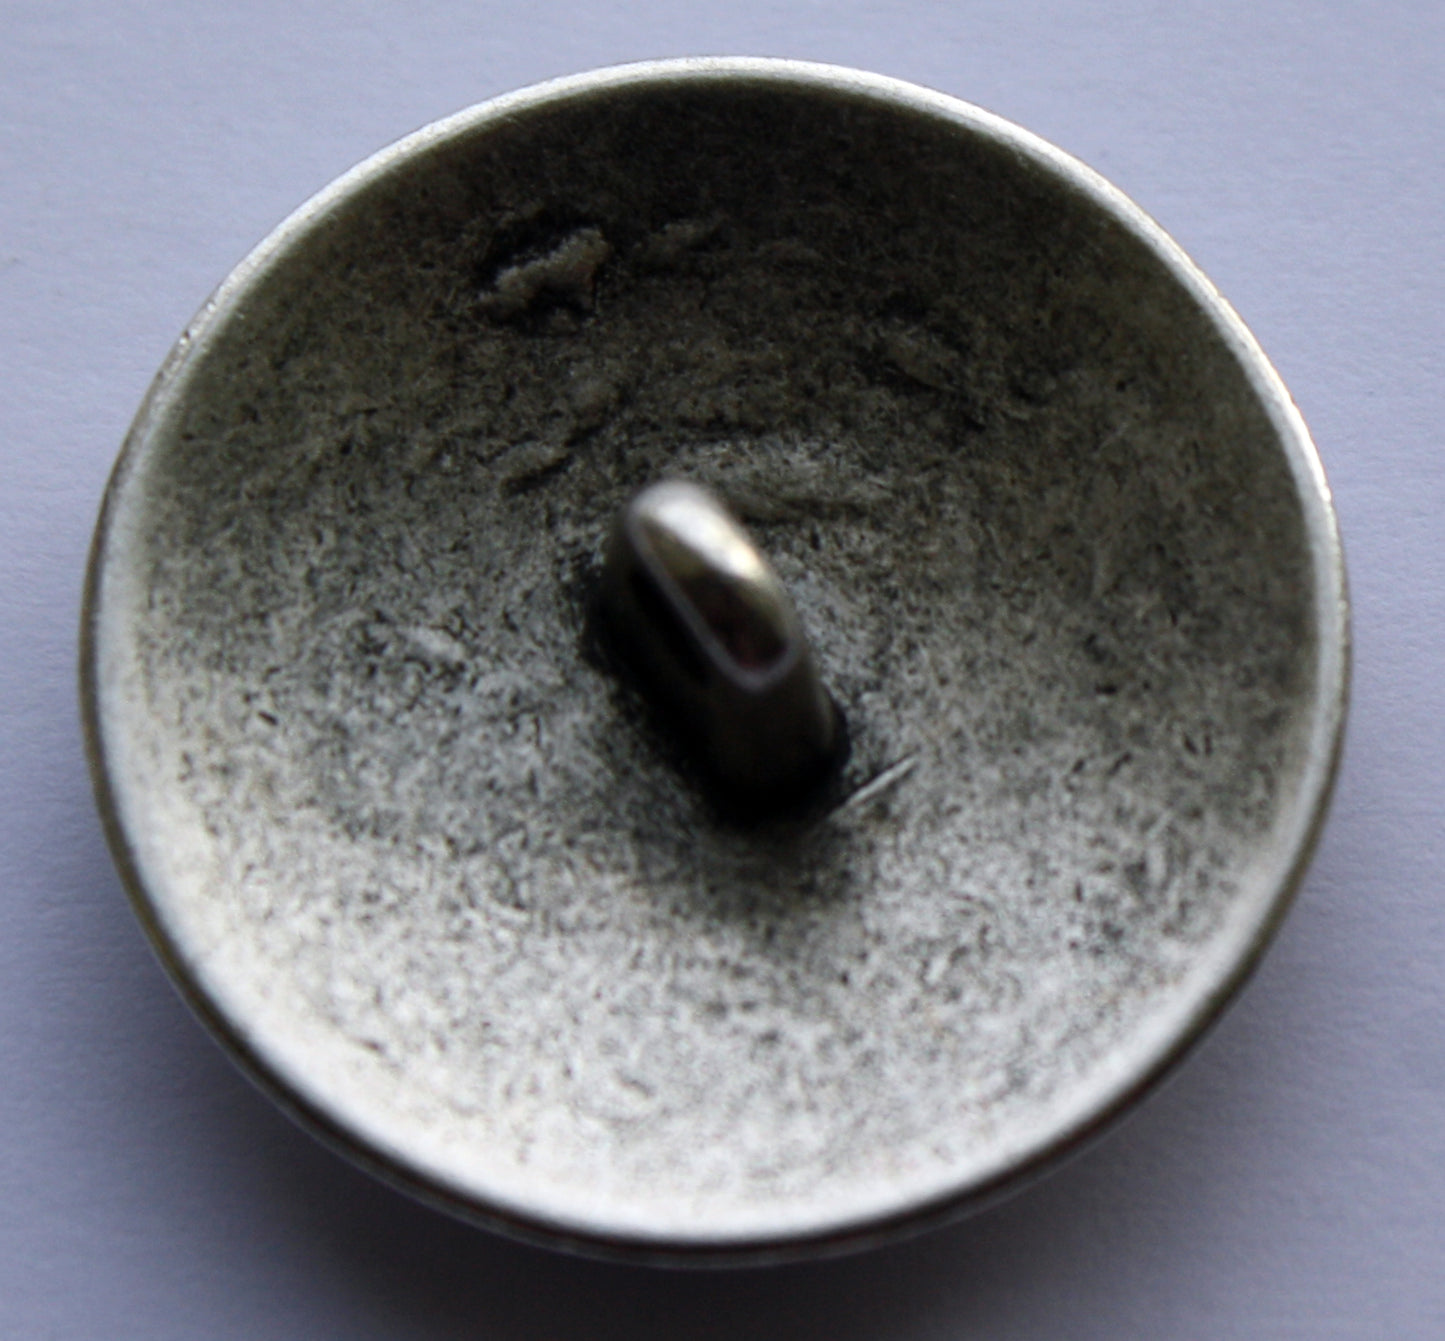 Metallknapp mönstrad i silver - finns i 2 storlekar. - Sykungen